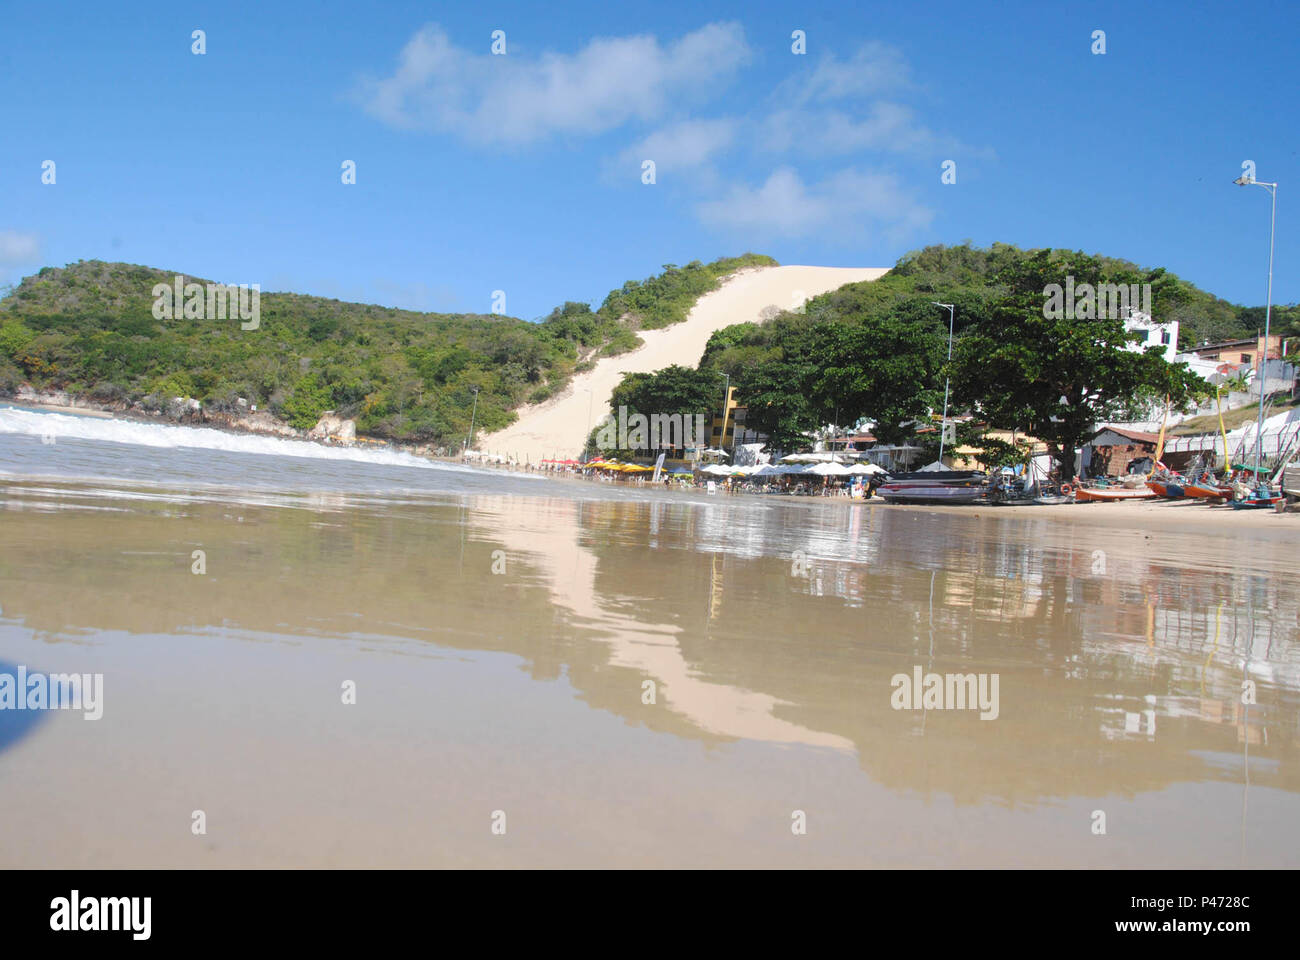 Praia de Ponta Negra, localizada no litoral sul de Natal, RN Stock Photo -  Alamy